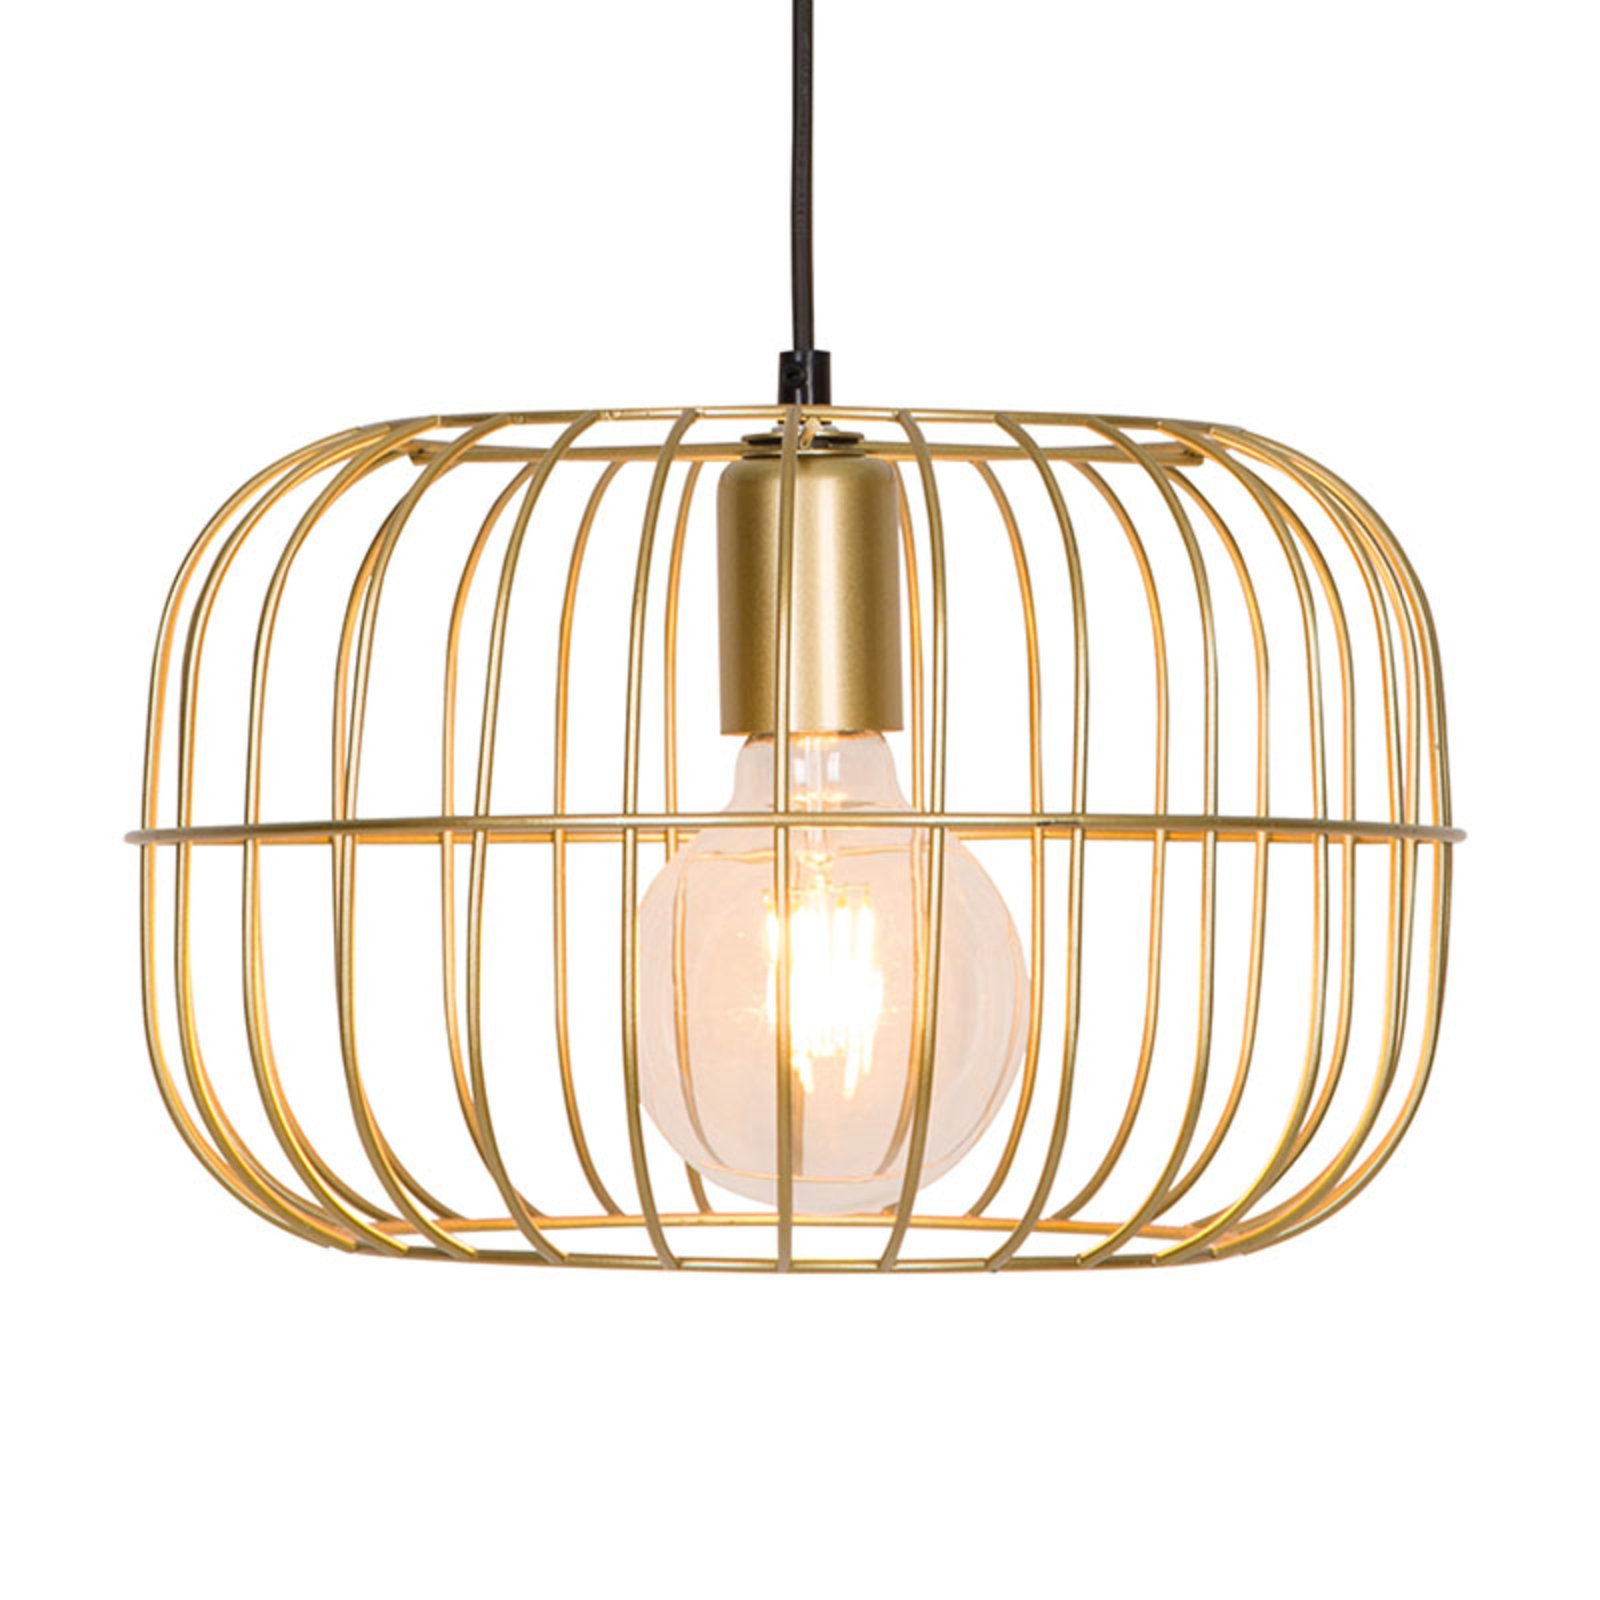 Hanglamp Zenith in kooivorm, goud